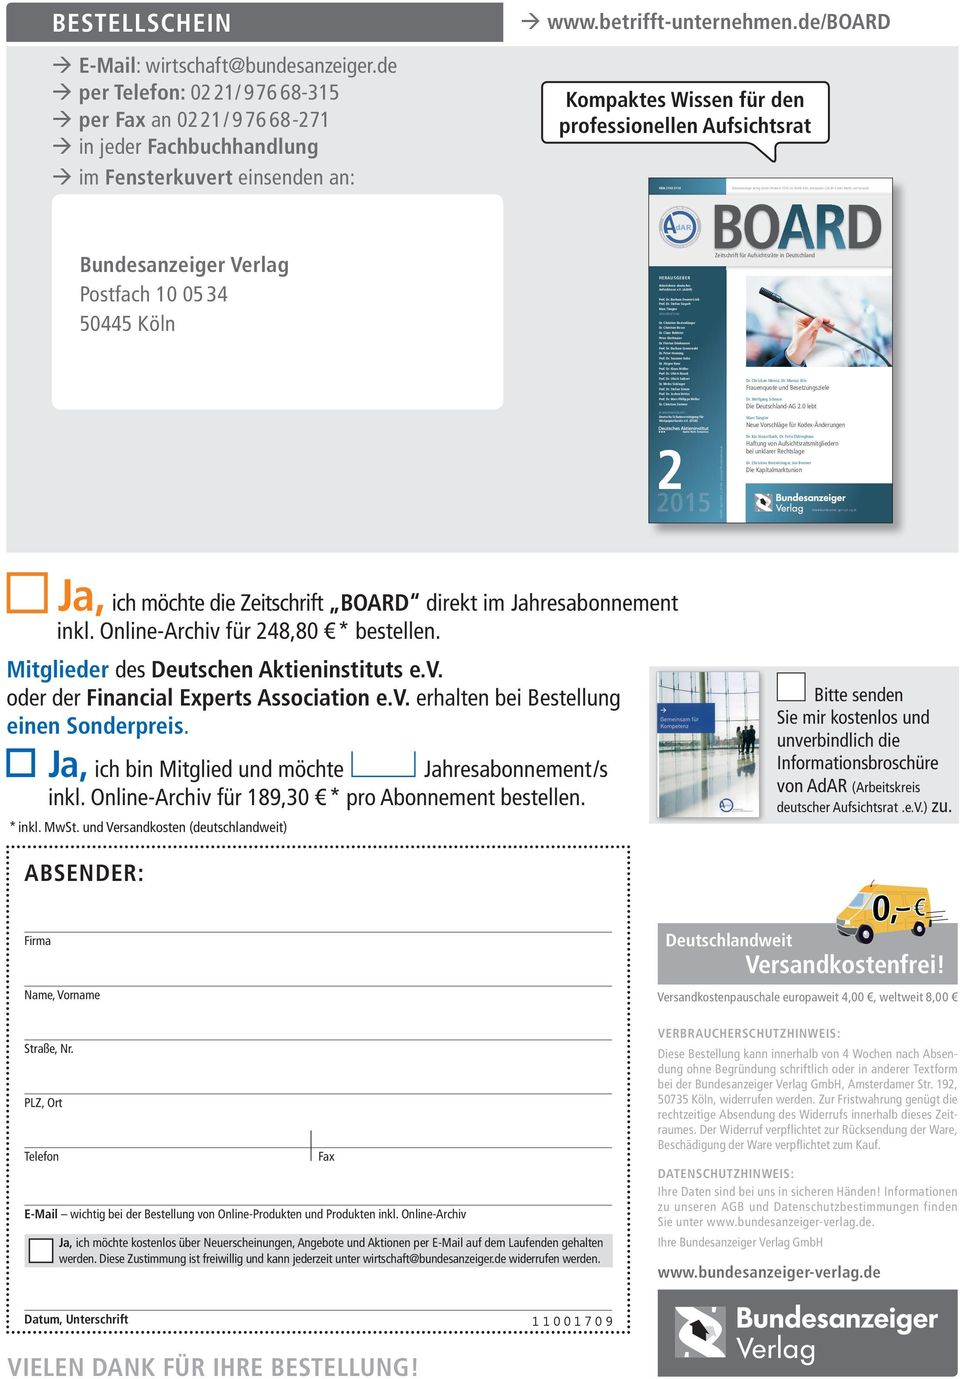 de/board Kompaktes Wissen für den professionellen Aufsichtsrat ISSN 2192-211X Bundesanzeiger Verlag GmbH, Postfach 10 05 34, 50445 Köln, Jahrespreis: 233,40 E (inkl. MwSt.